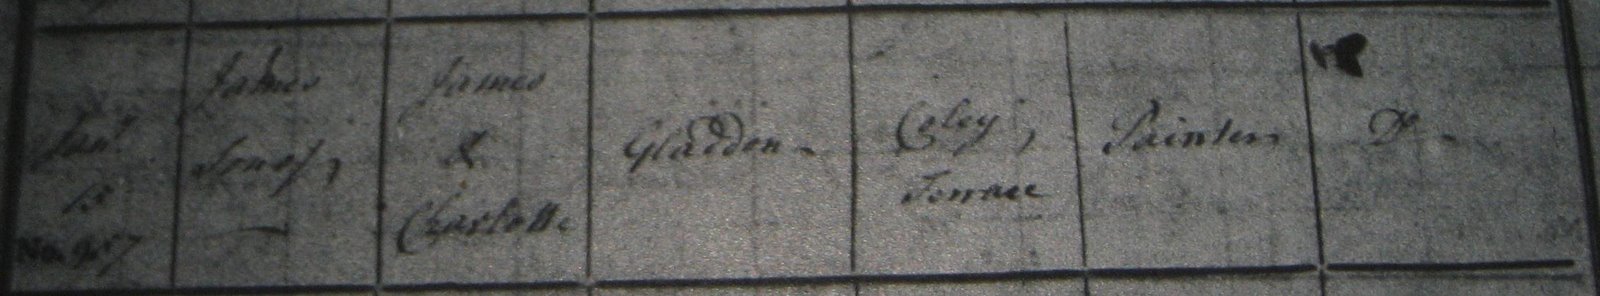 [1821-01-15+-+Closeup+-+Gladden,+James+-+Birth+Record+to+James+Gladden.jpg]